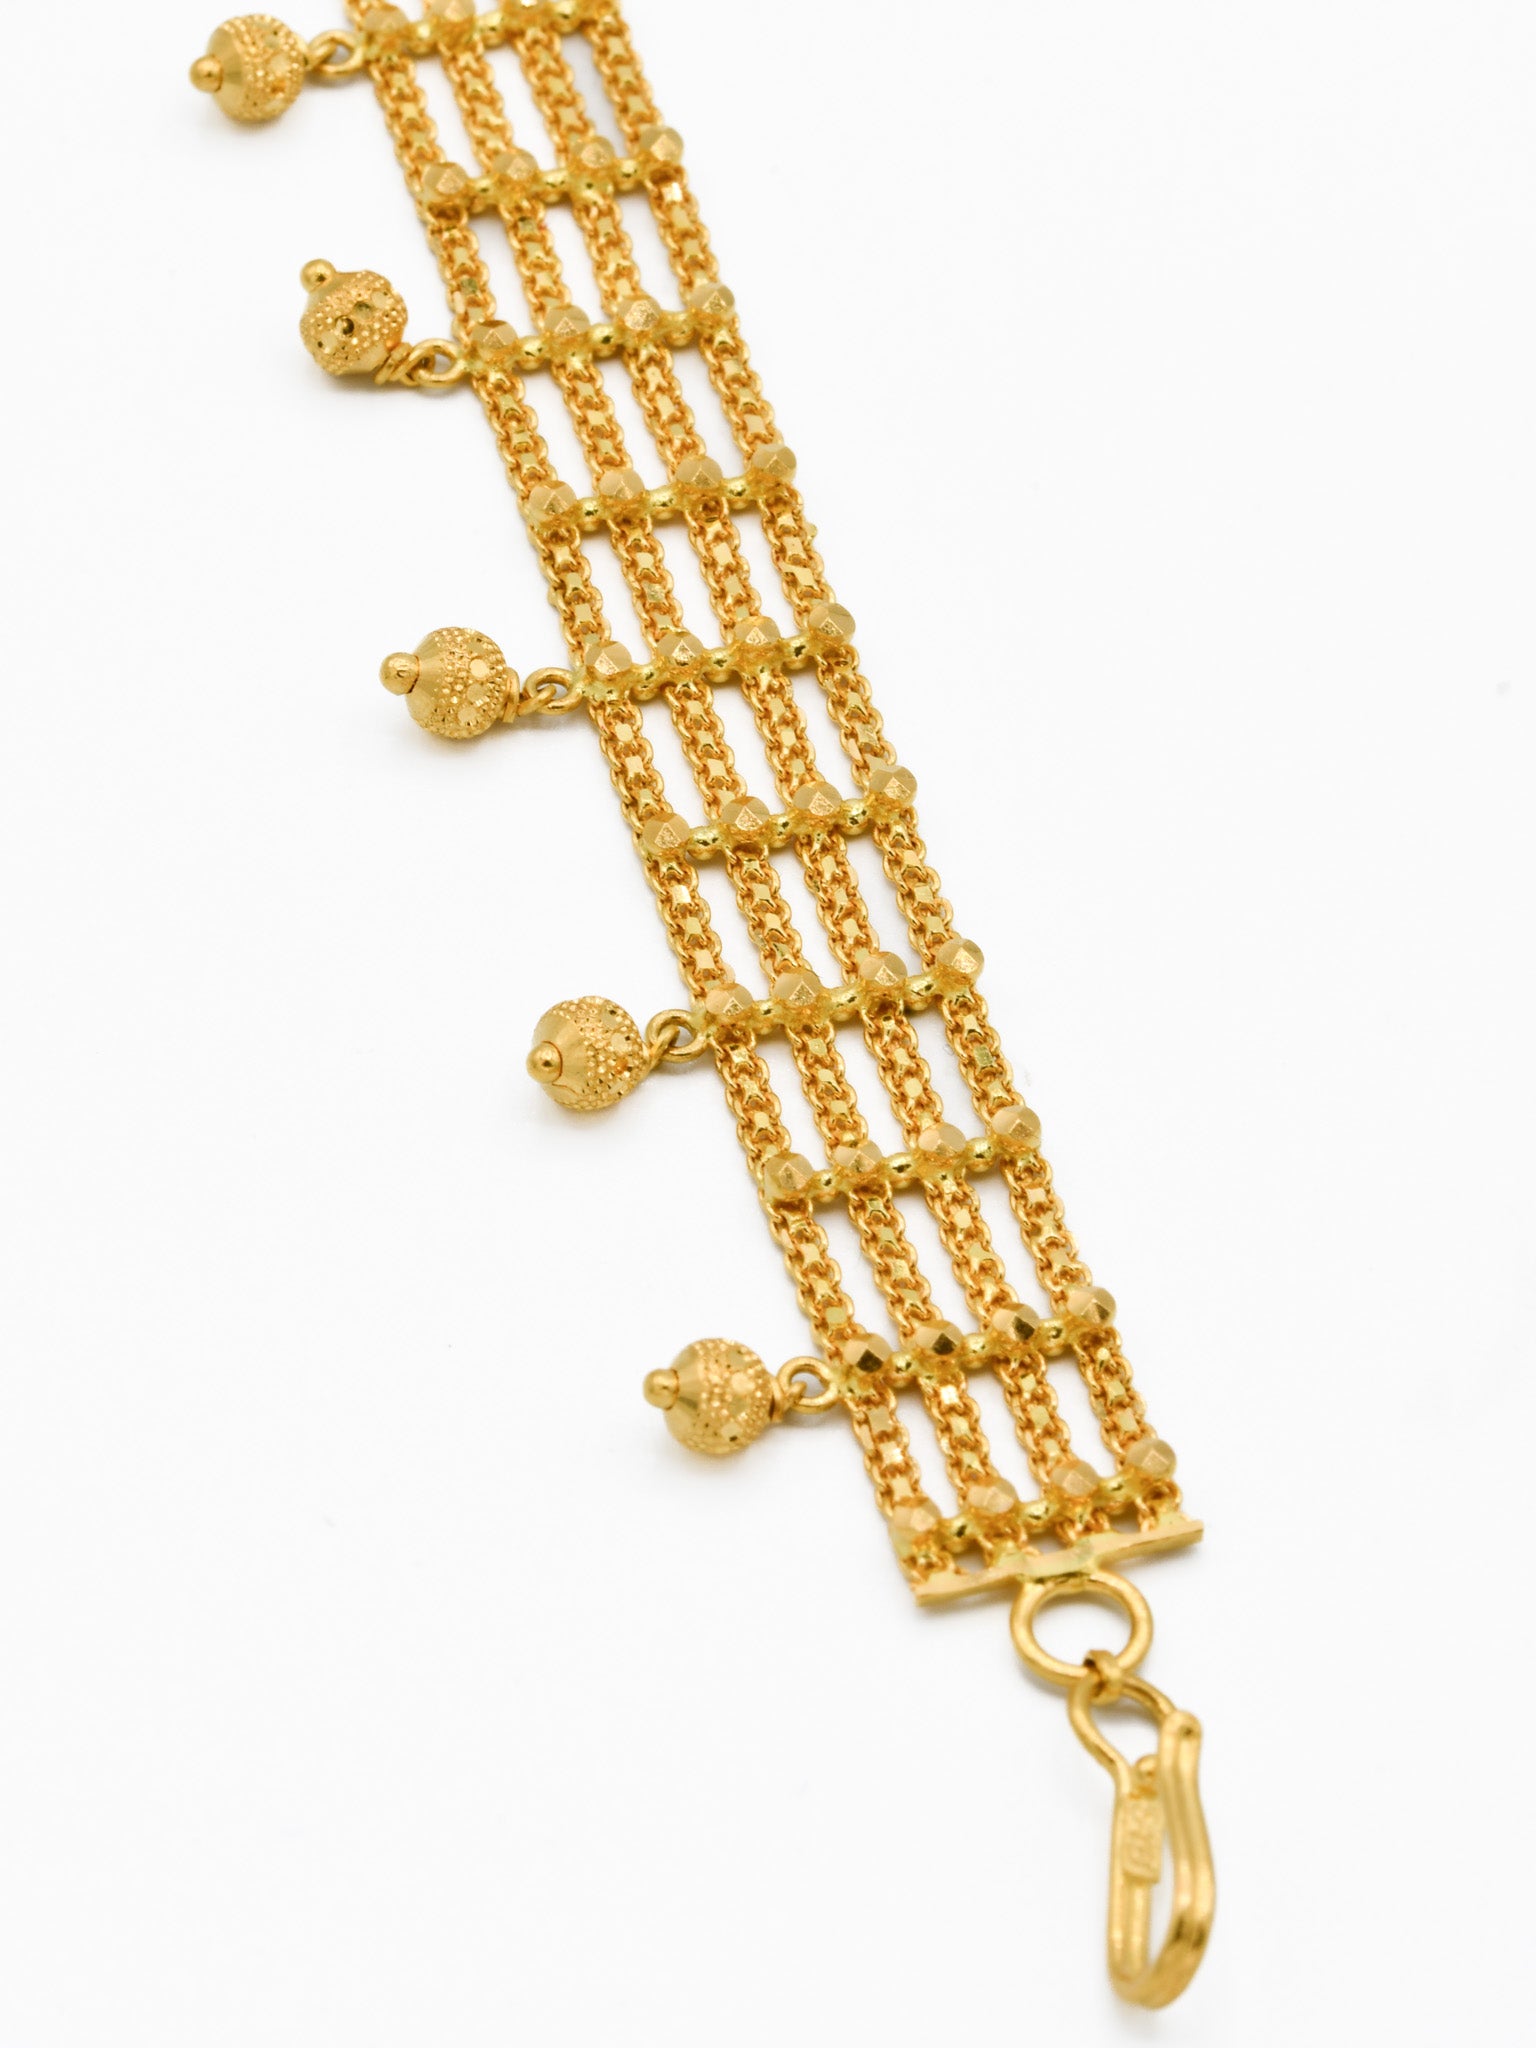 22ct Gold 4 Row Ladies Bracelet - Roop Darshan